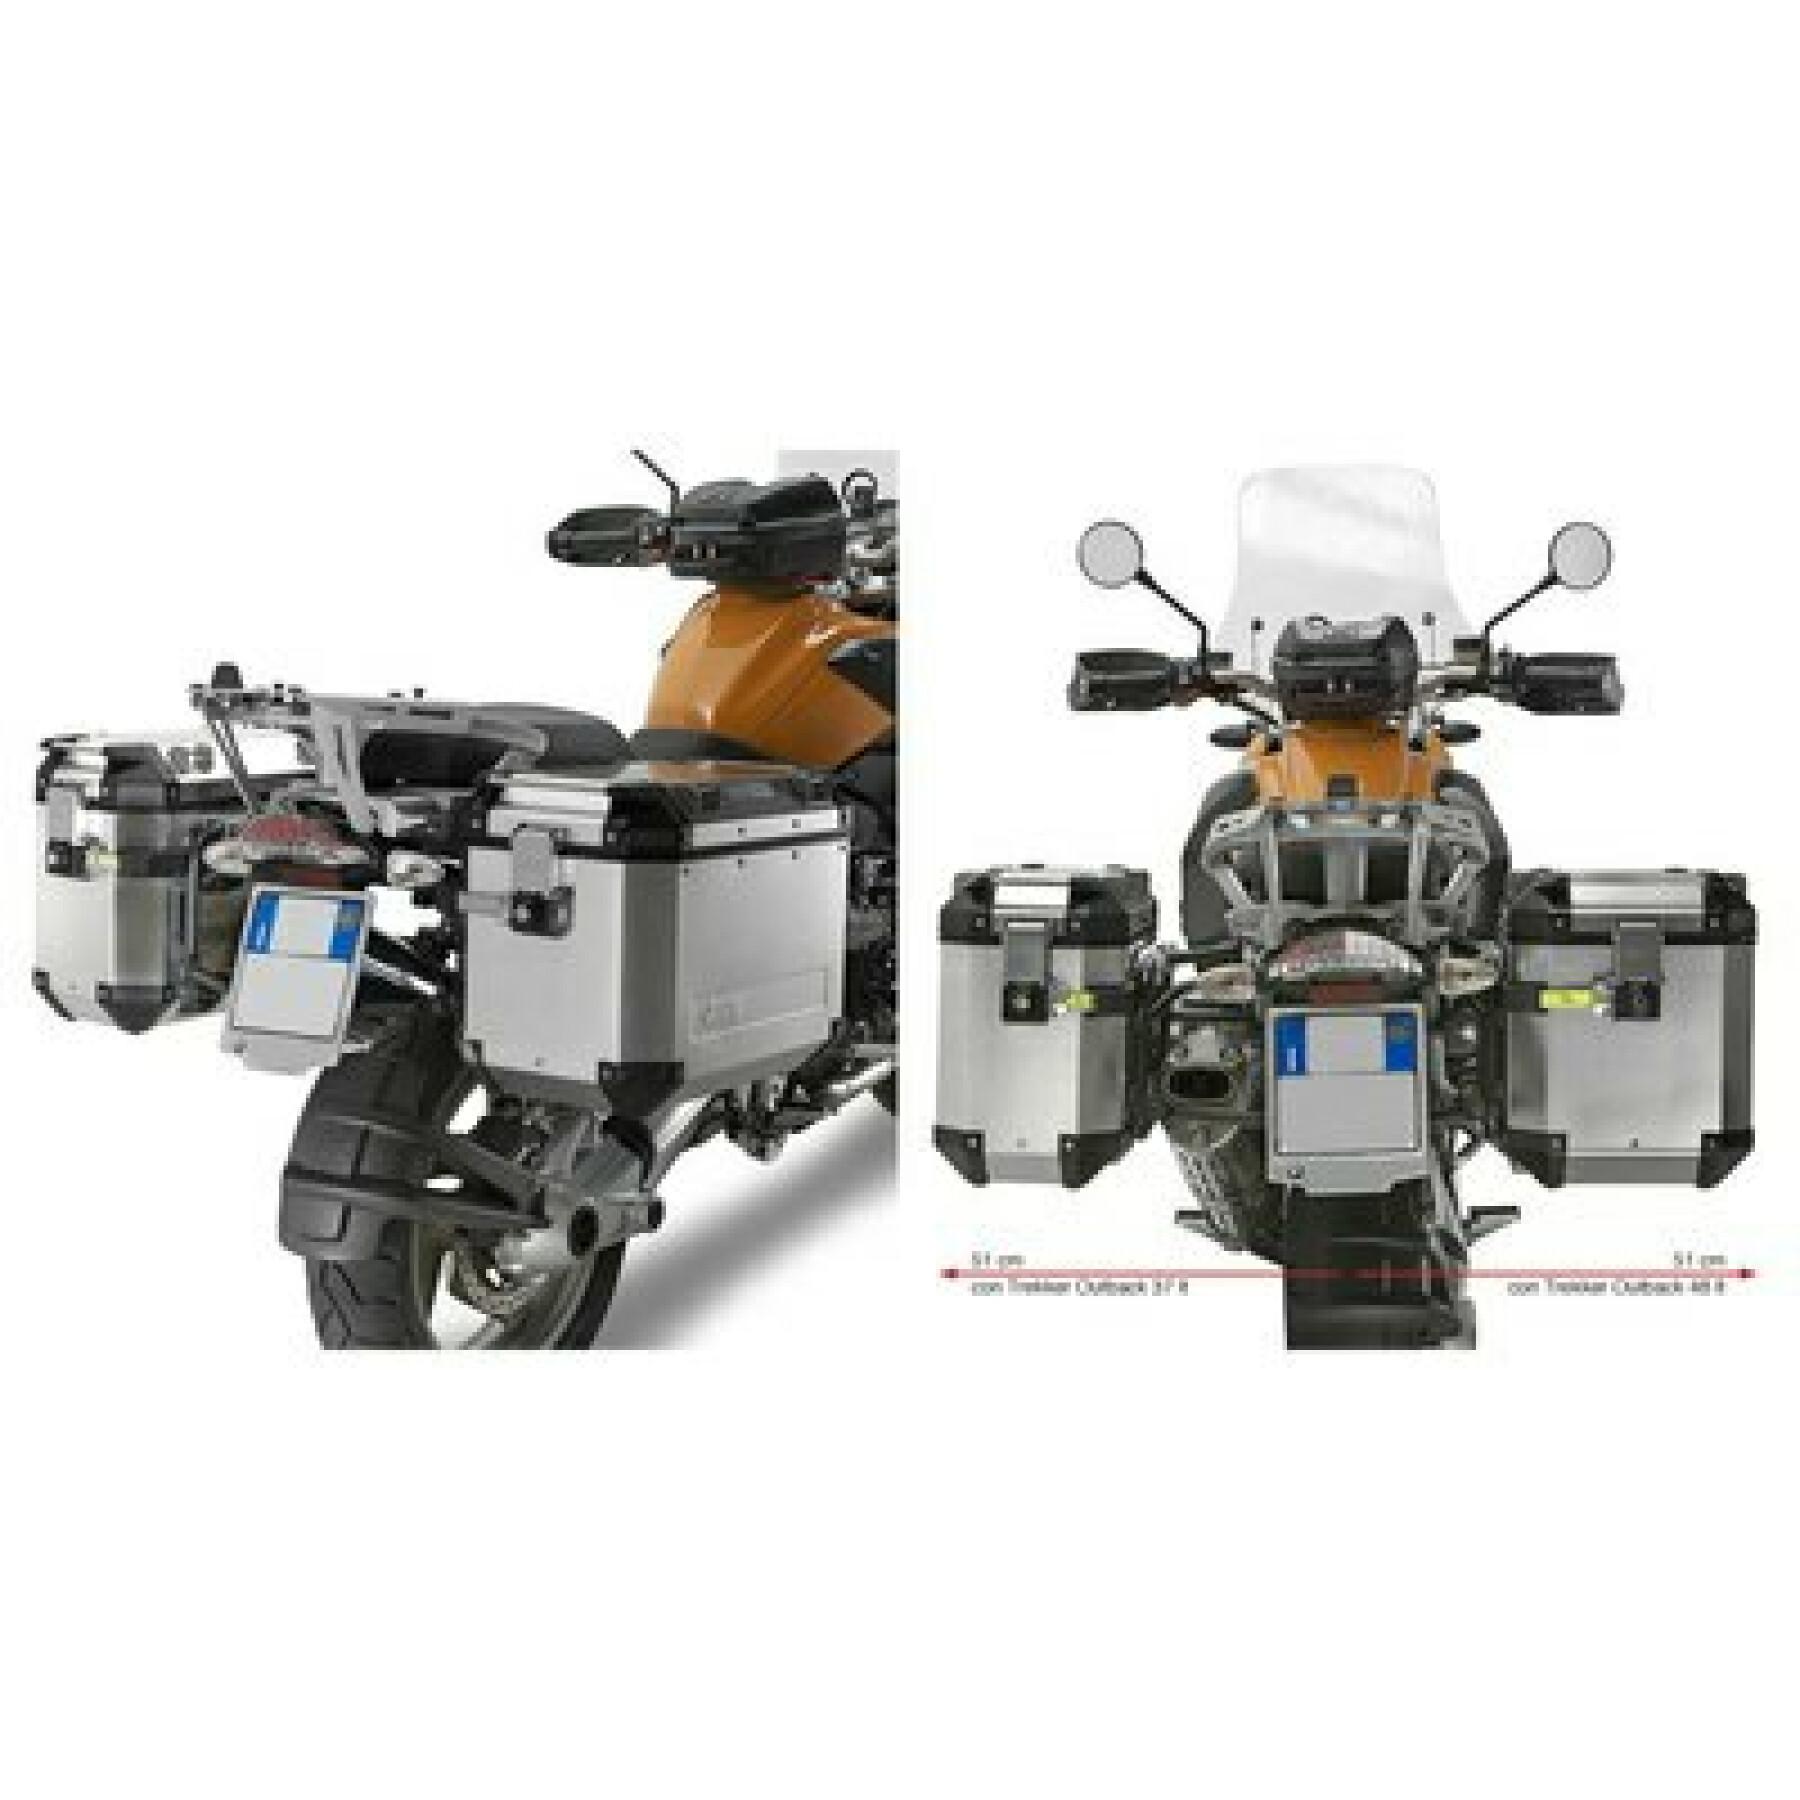 Suporte de mala lateral de motocicleta Givi Monokey Cam-Side Bmw R 1200 Gs (04 À 12)